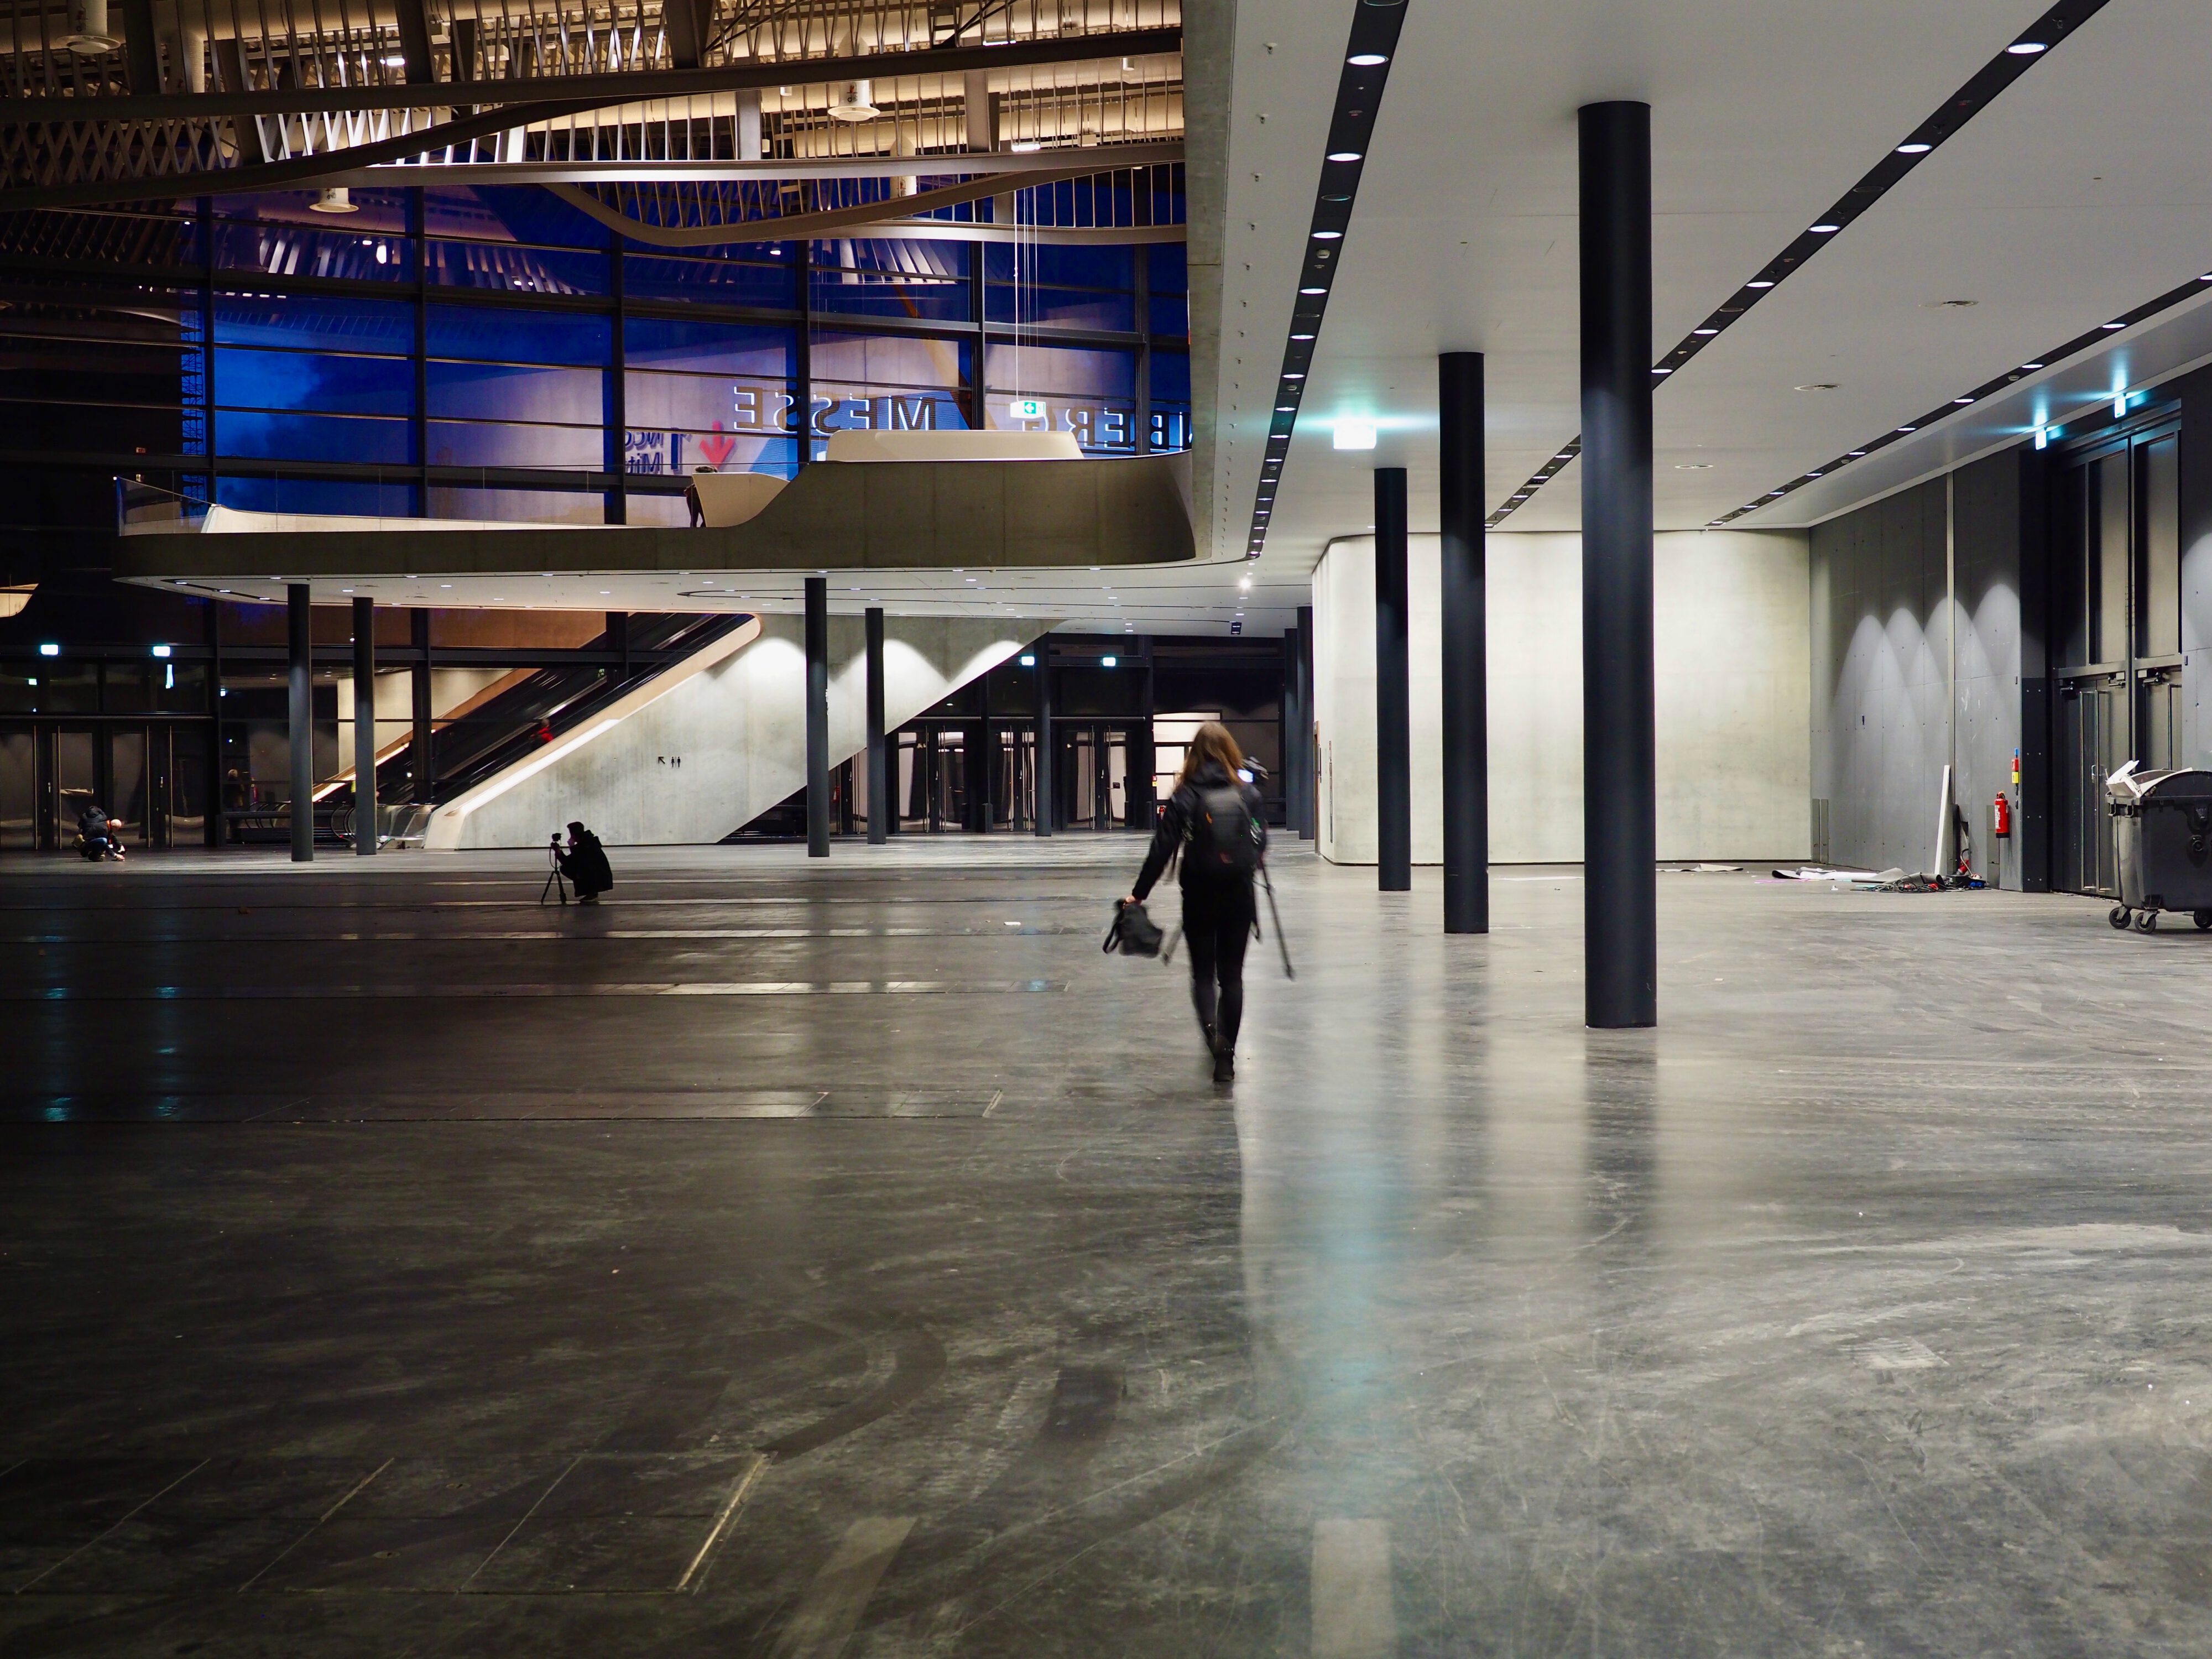 Exhibition Hall in Nuremberg by Zaha Hadid